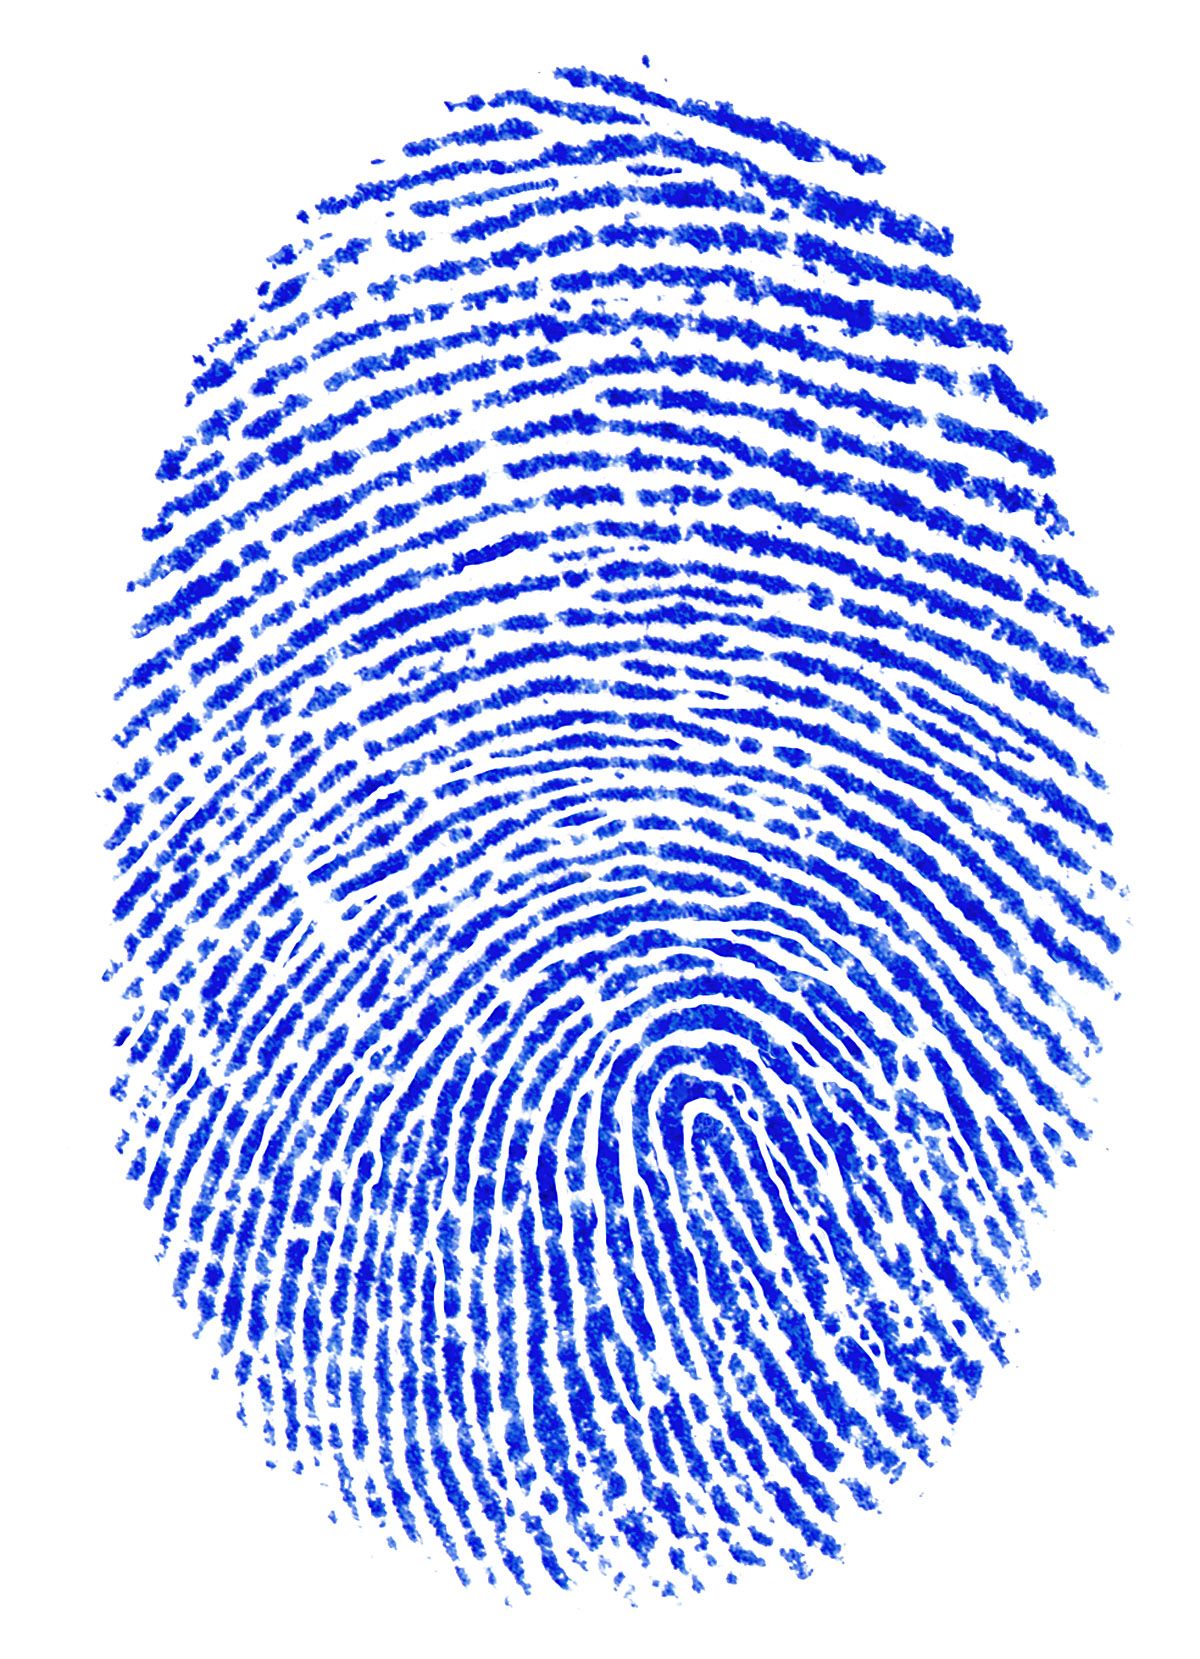 Identity-Theft-Fingerprint.jpg